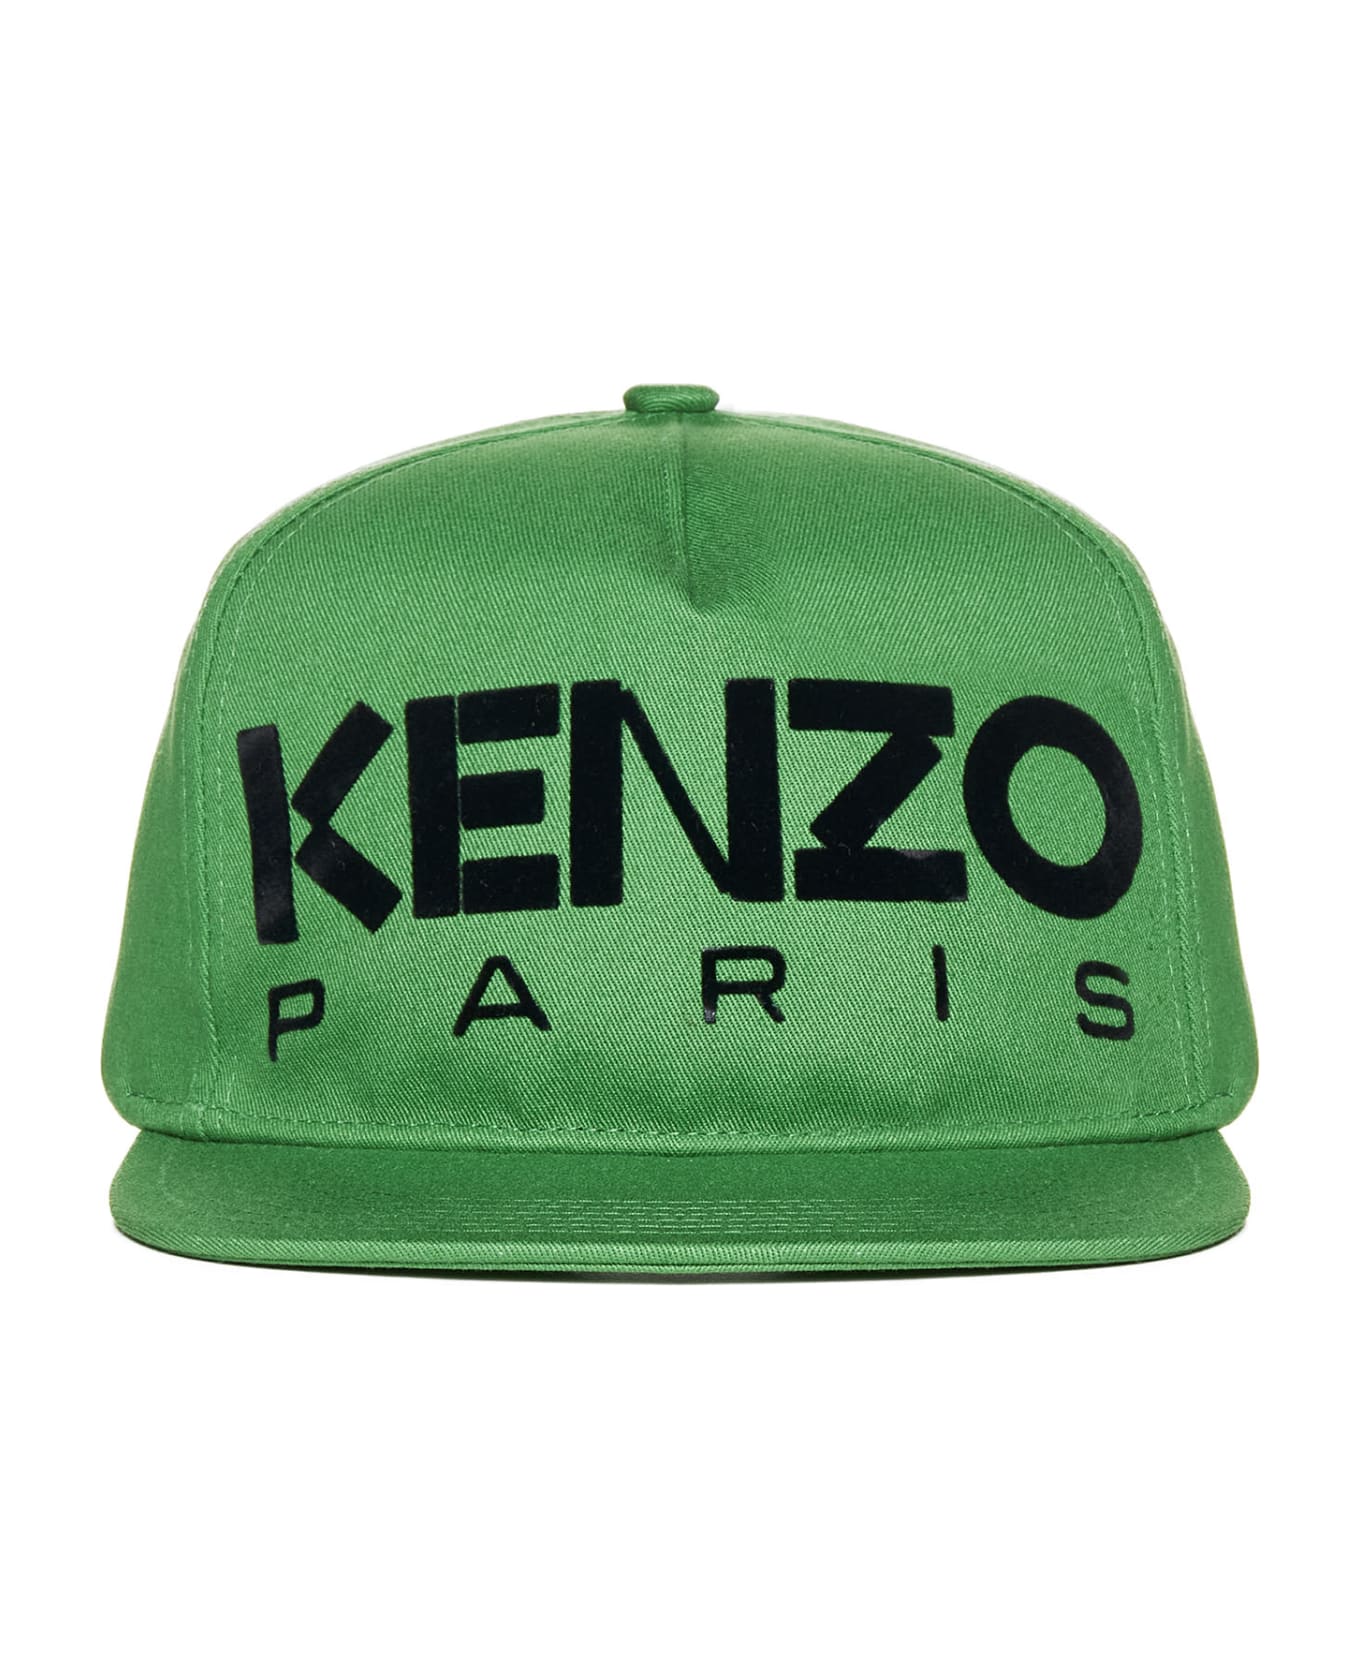 Kenzo Logo Cotton Baseball Cap - Gazon 帽子